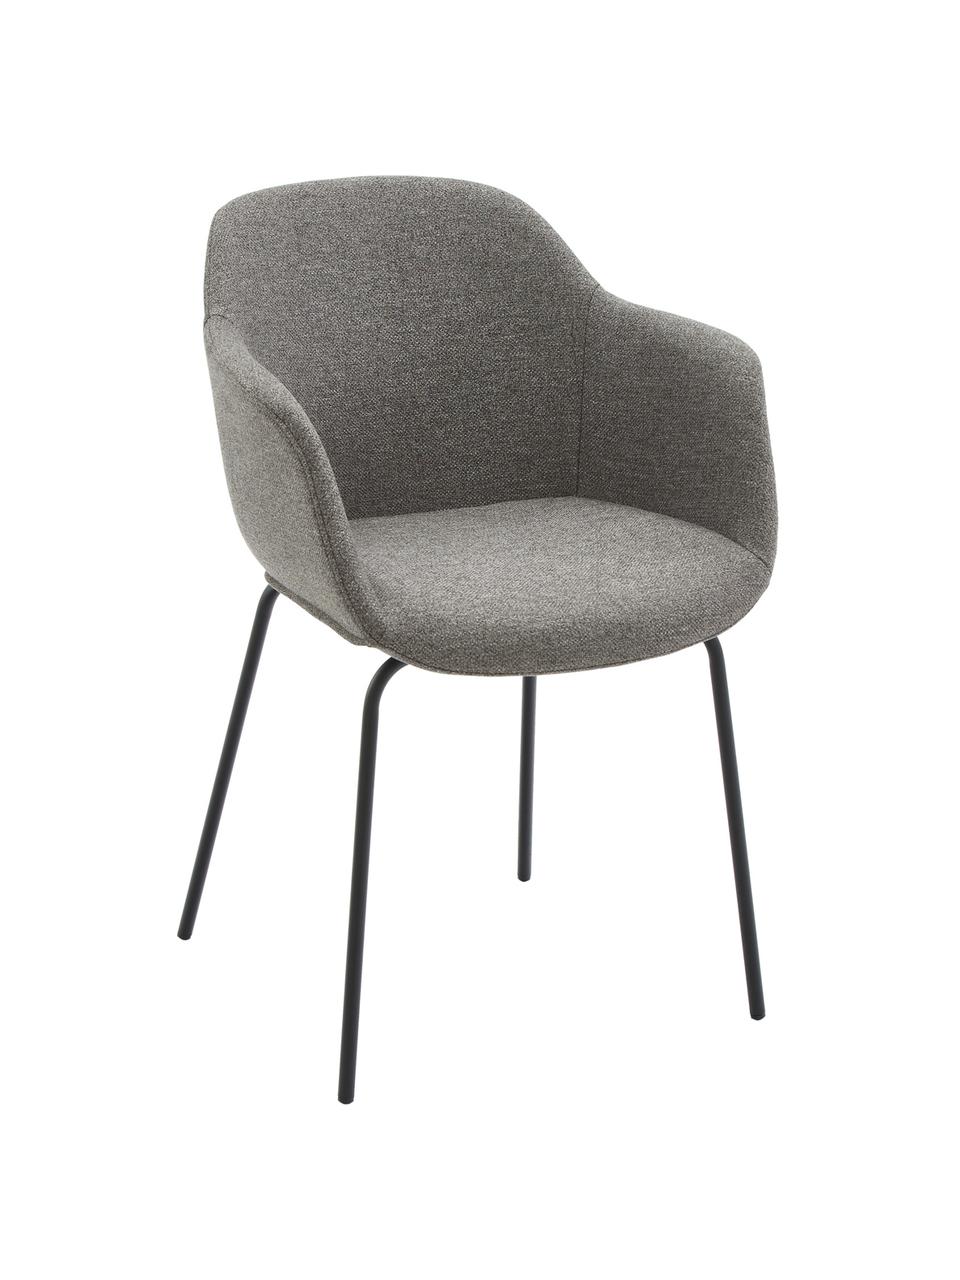 Petite chaise scandinave gris foncé Fiji, Tissu gris foncé, larg. 58 x prof. 56 cm